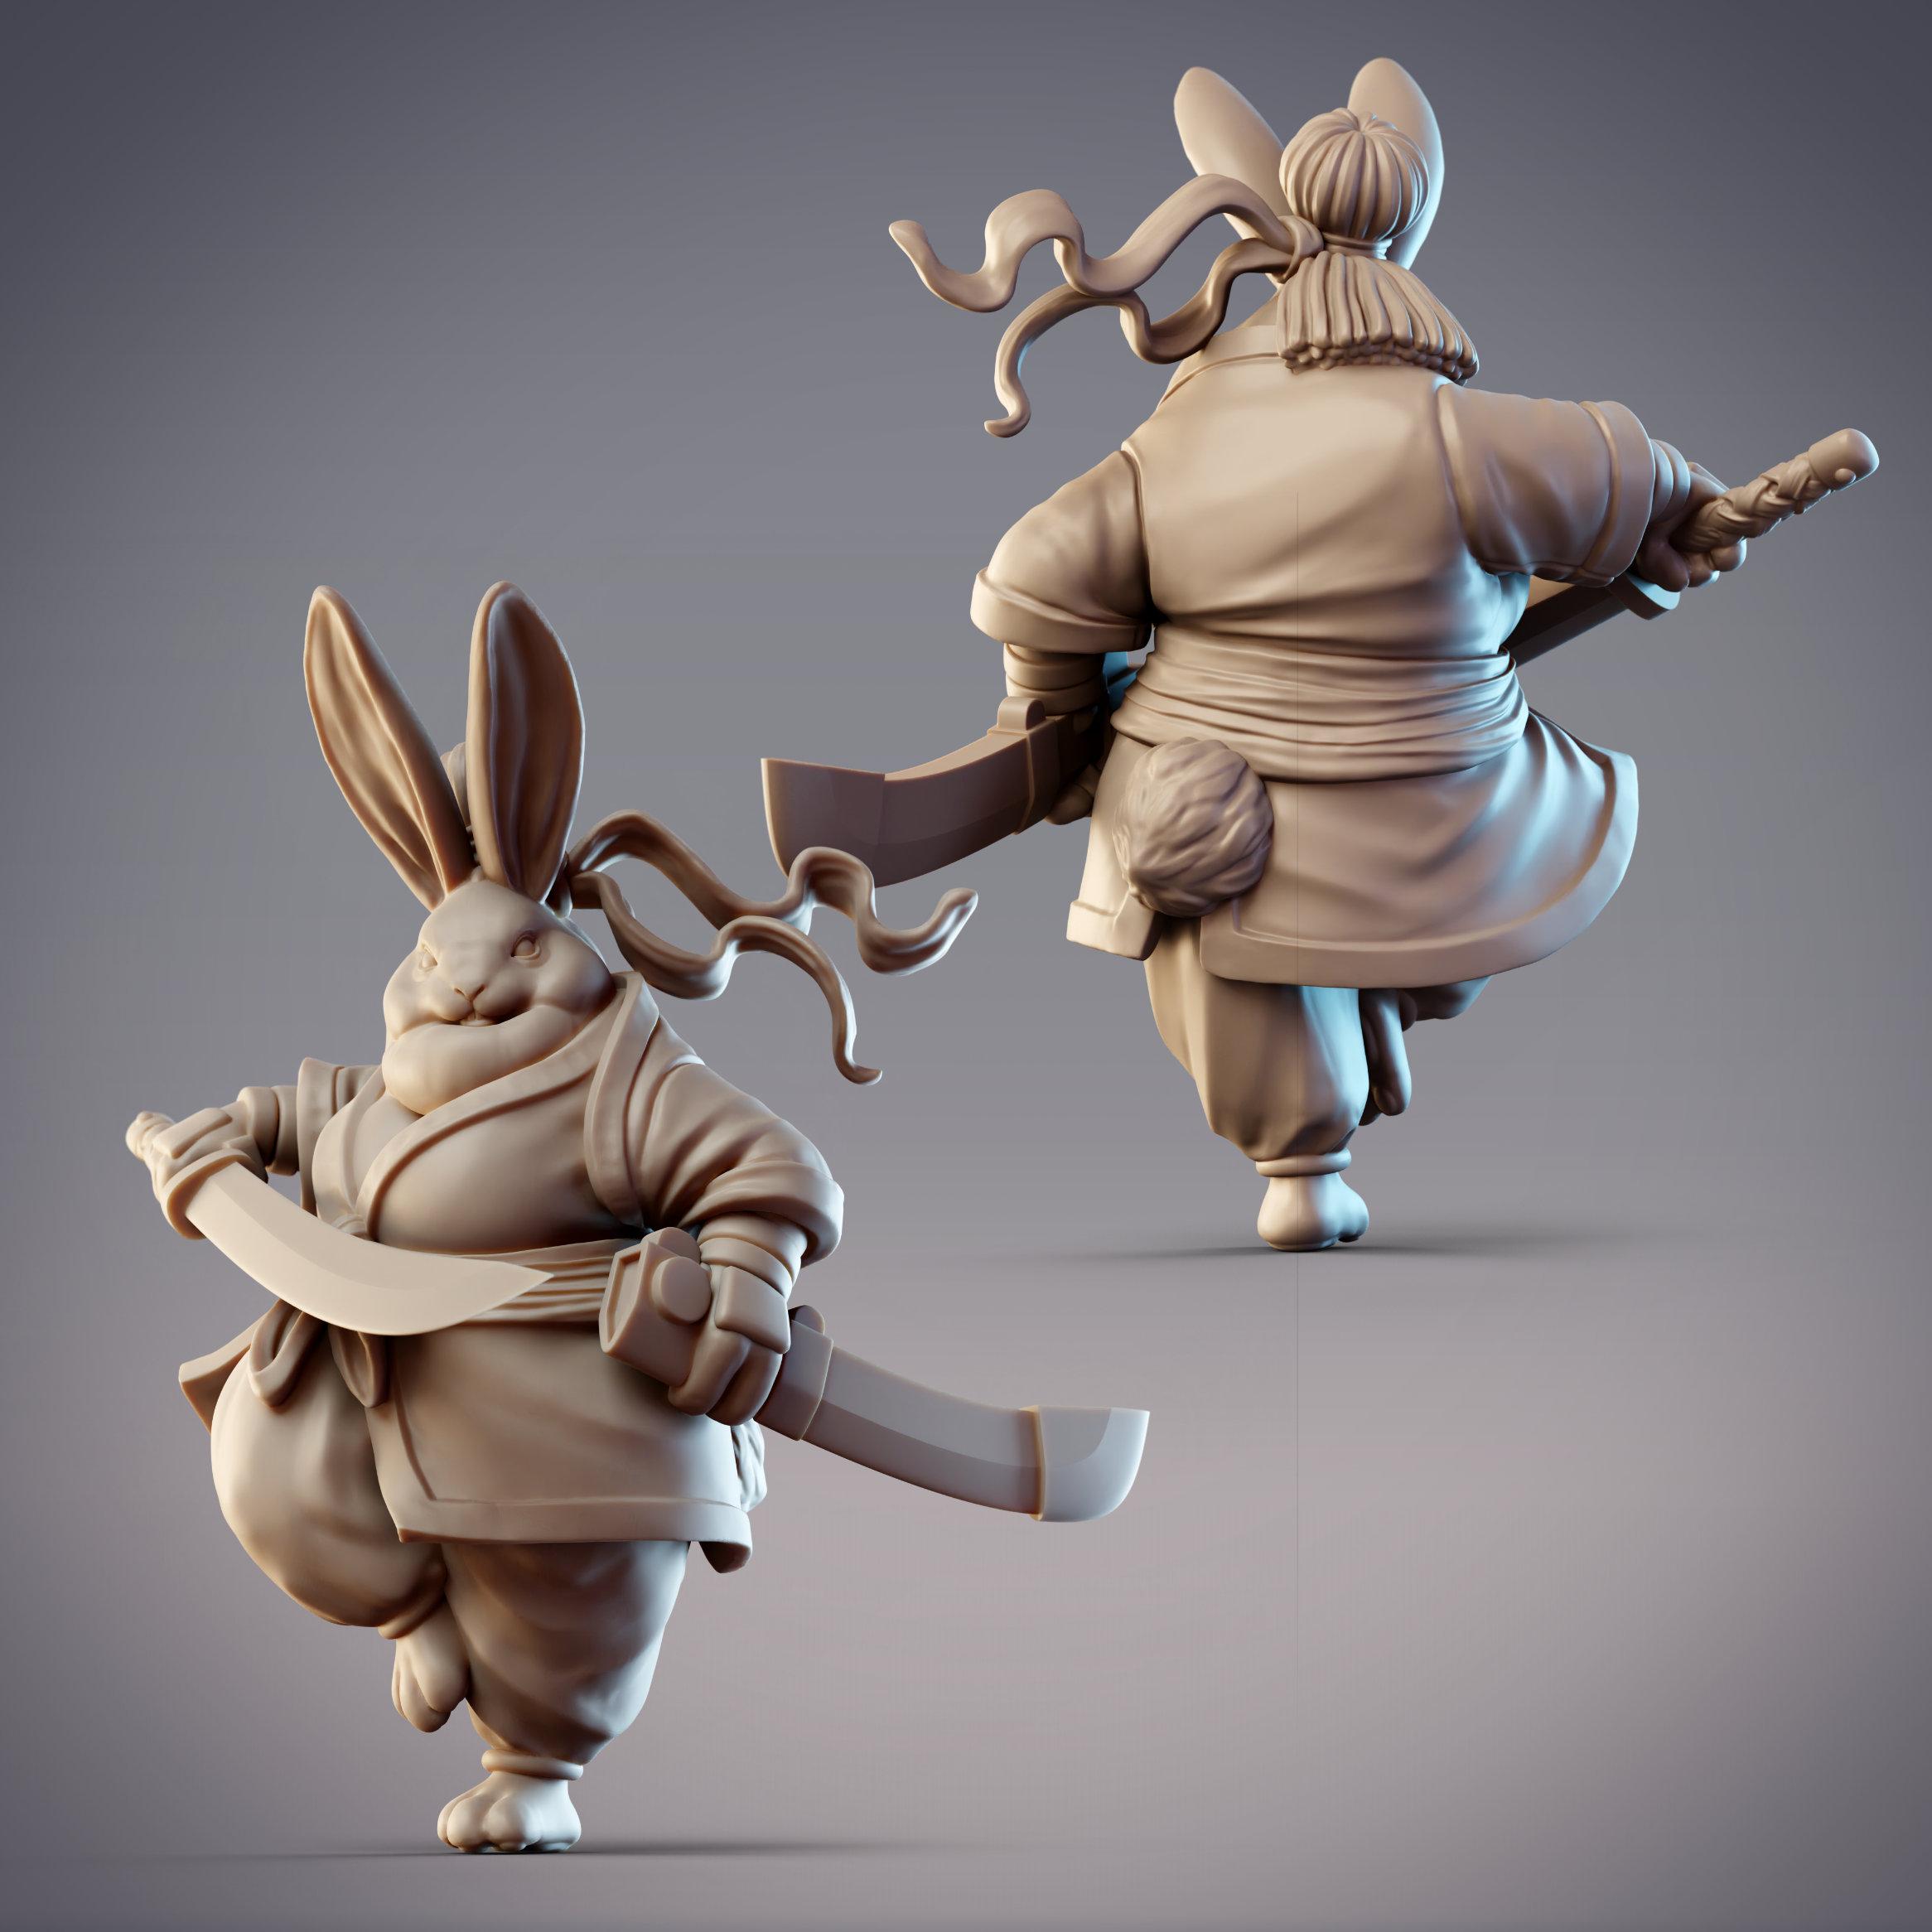 Rabbitfolk Warrior - Indigo Jade, Guanghan Swordswoman (Pre-Supported) 3d model